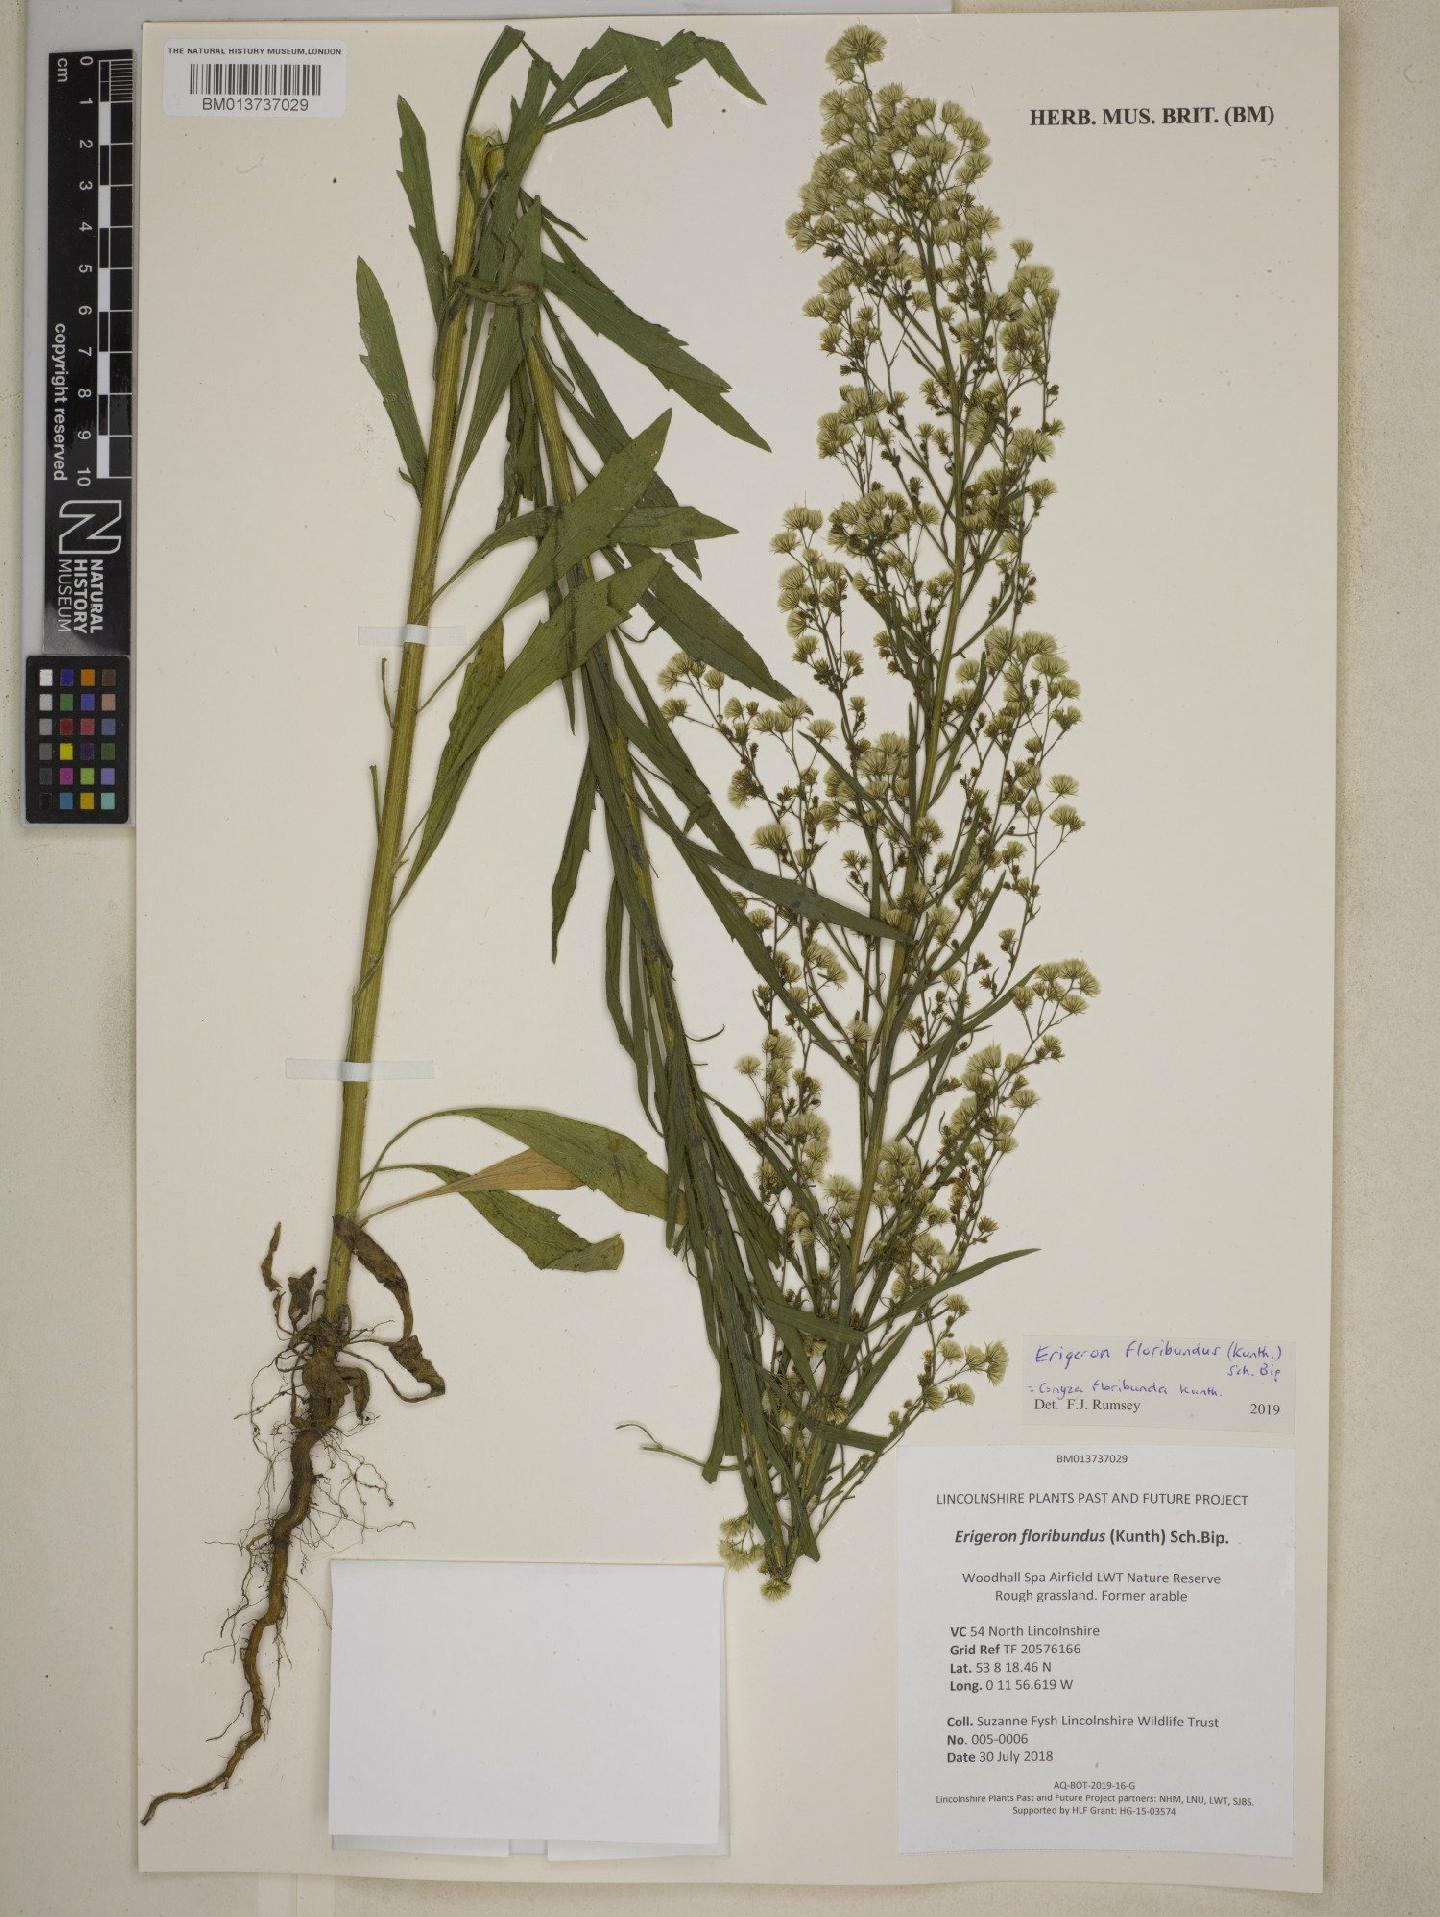 To NHMUK collection (Erigeron floribundus (Kunth) Sch.Bip.; NHMUK:ecatalogue:8758236)